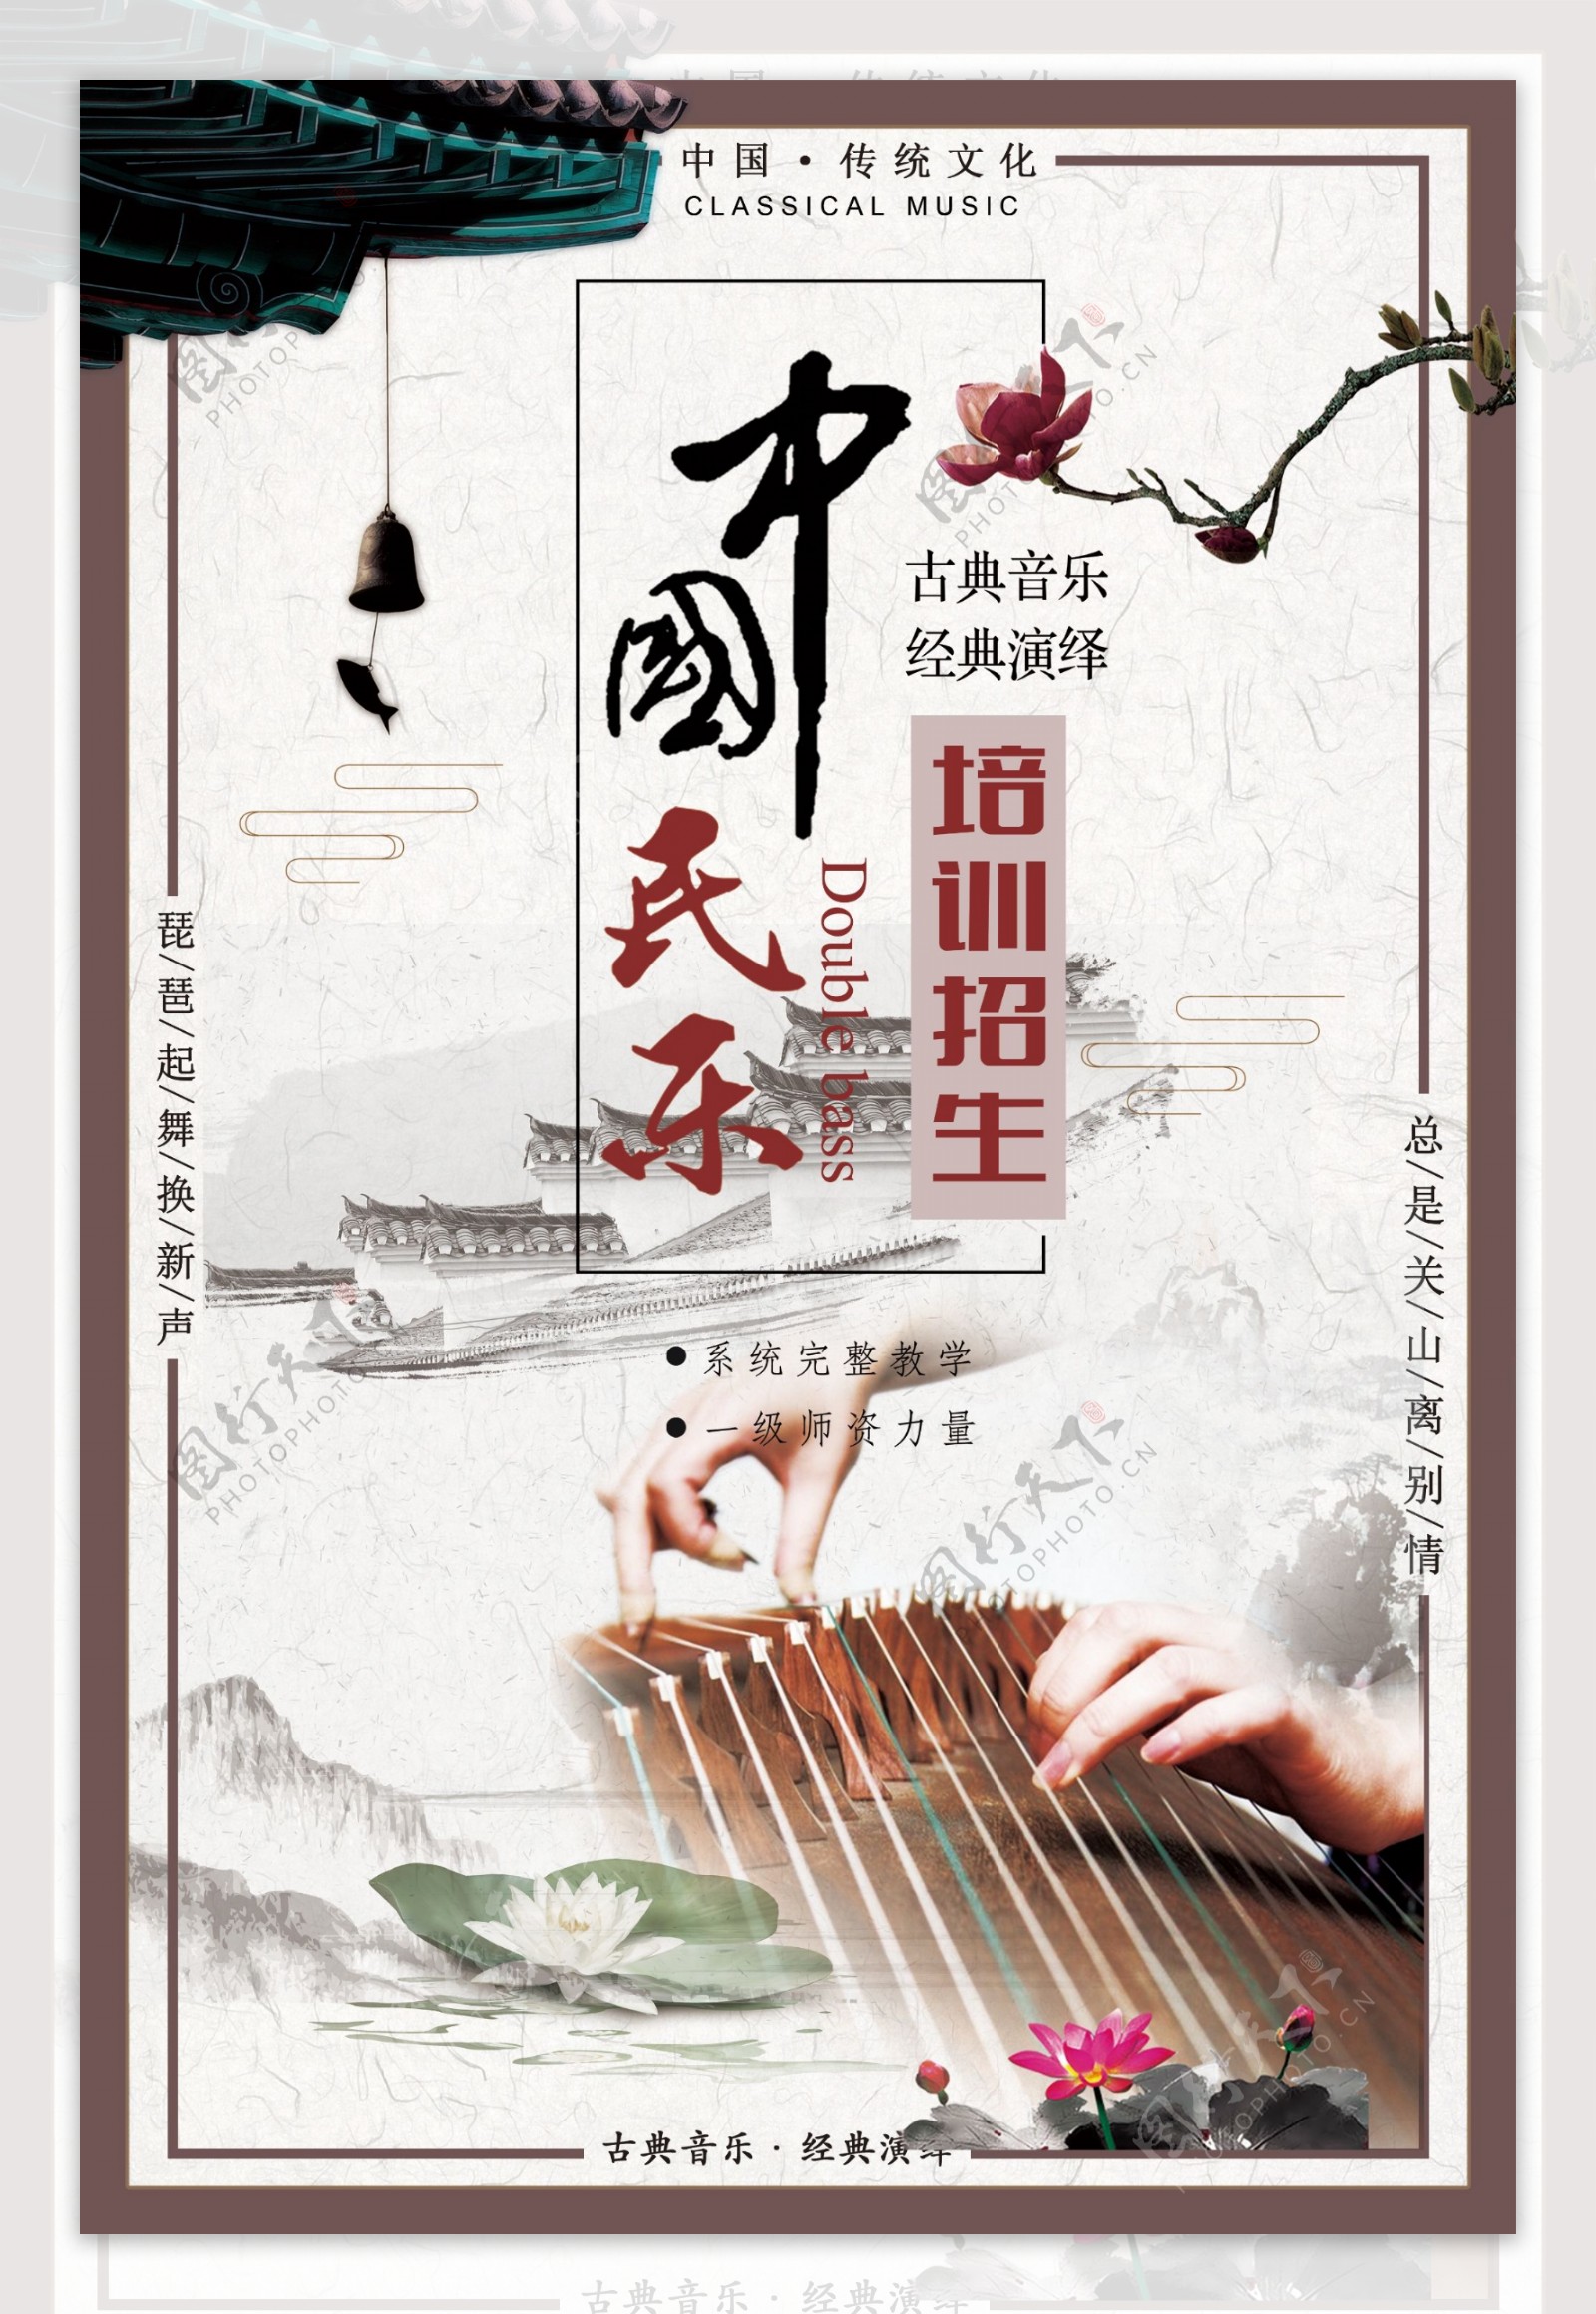 中国风水墨民乐培训创意宣传海报设计